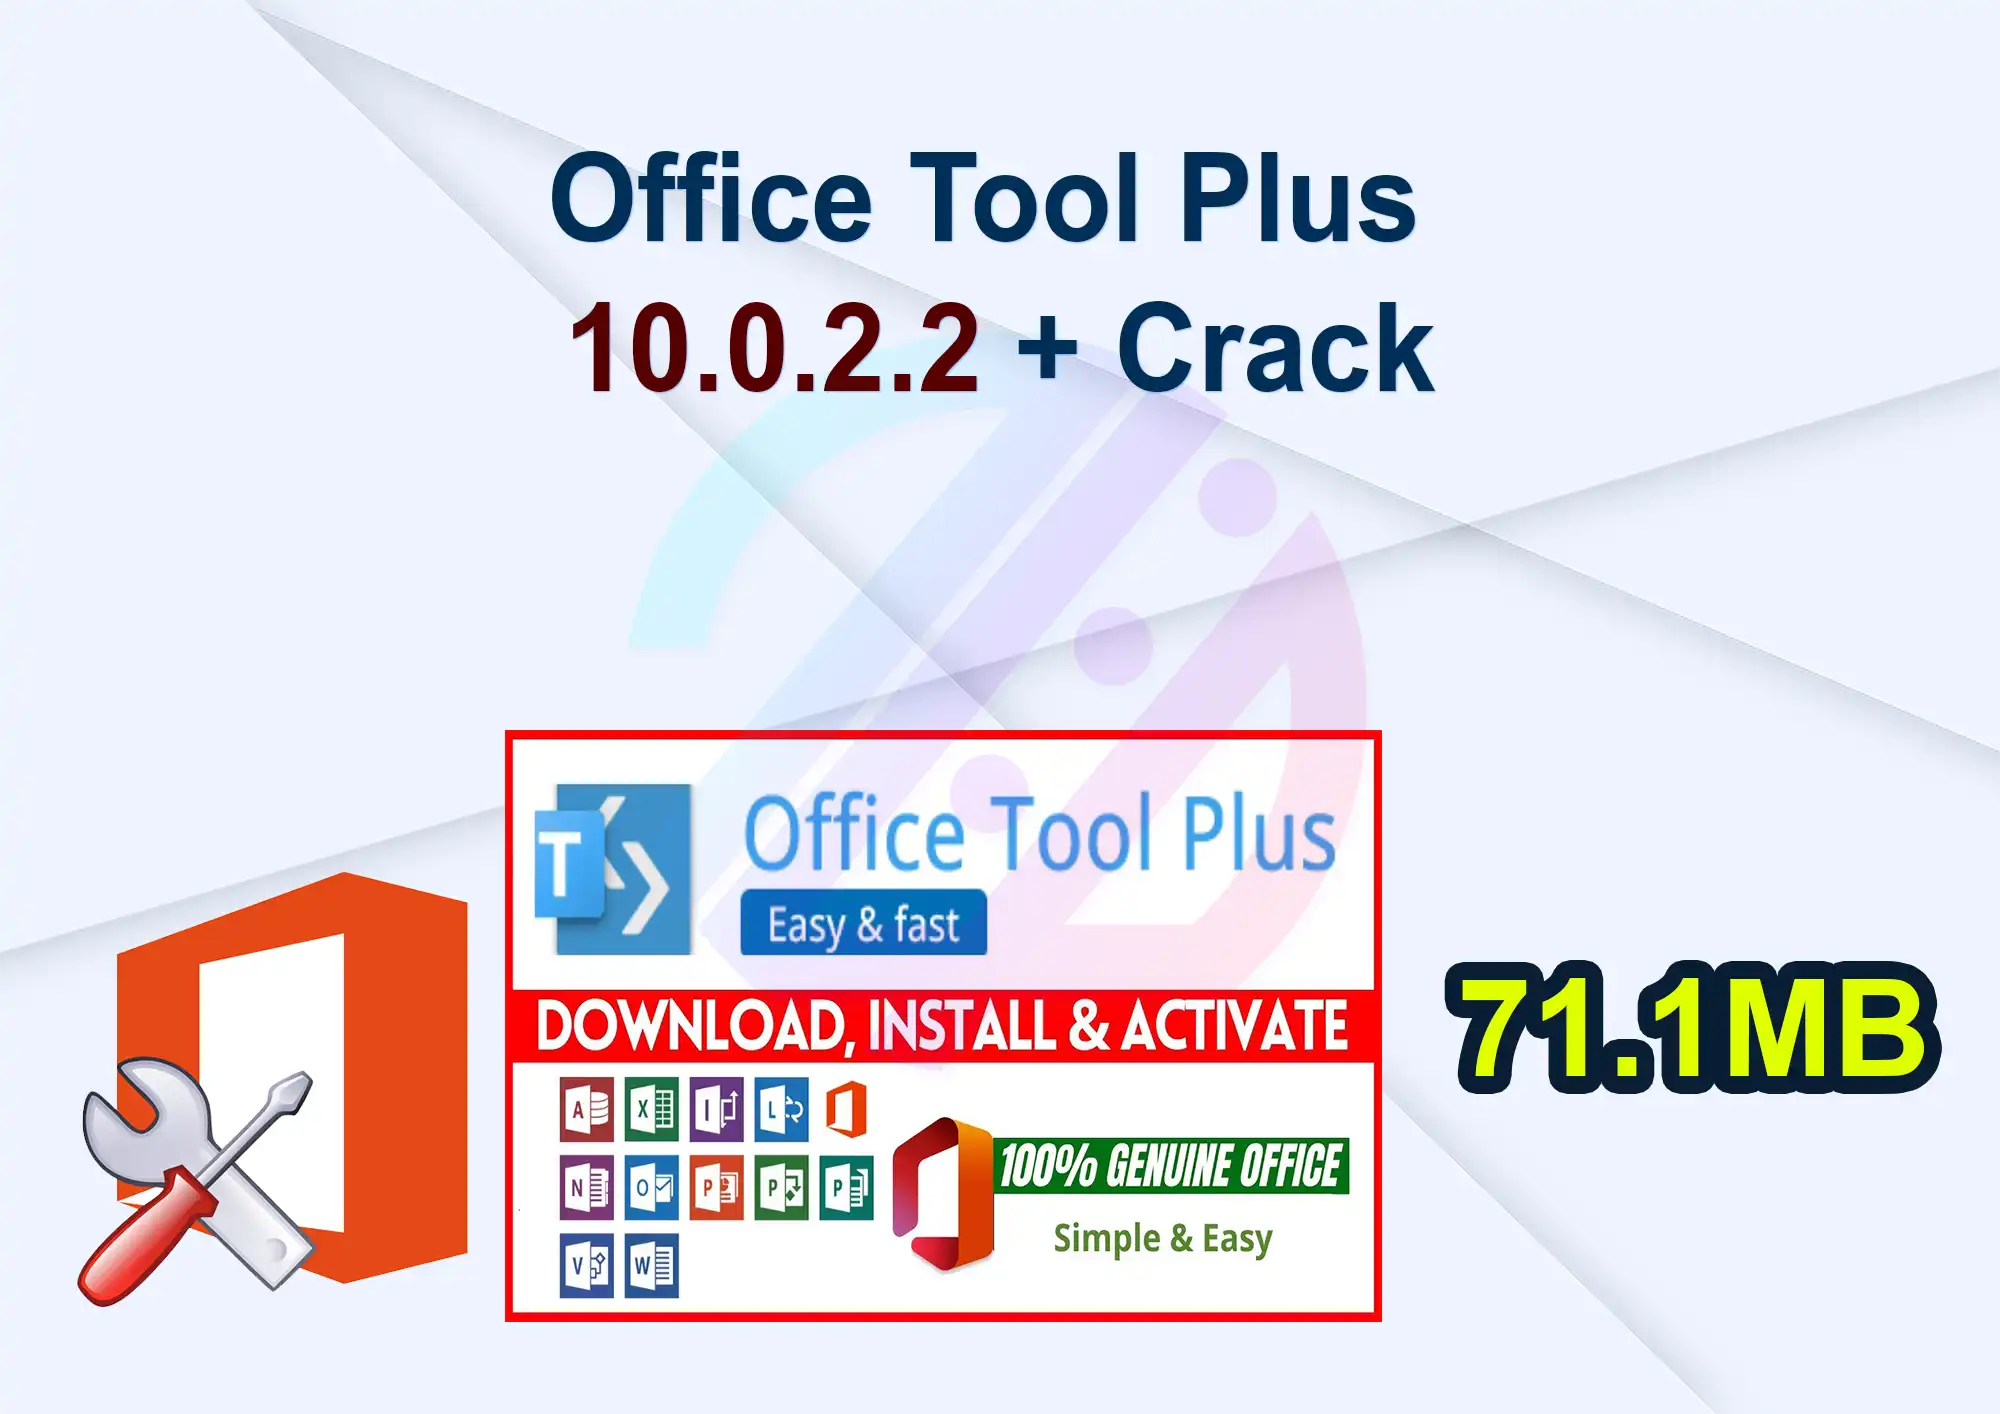 Office Tool Plus 10.0.2.2 + Crack